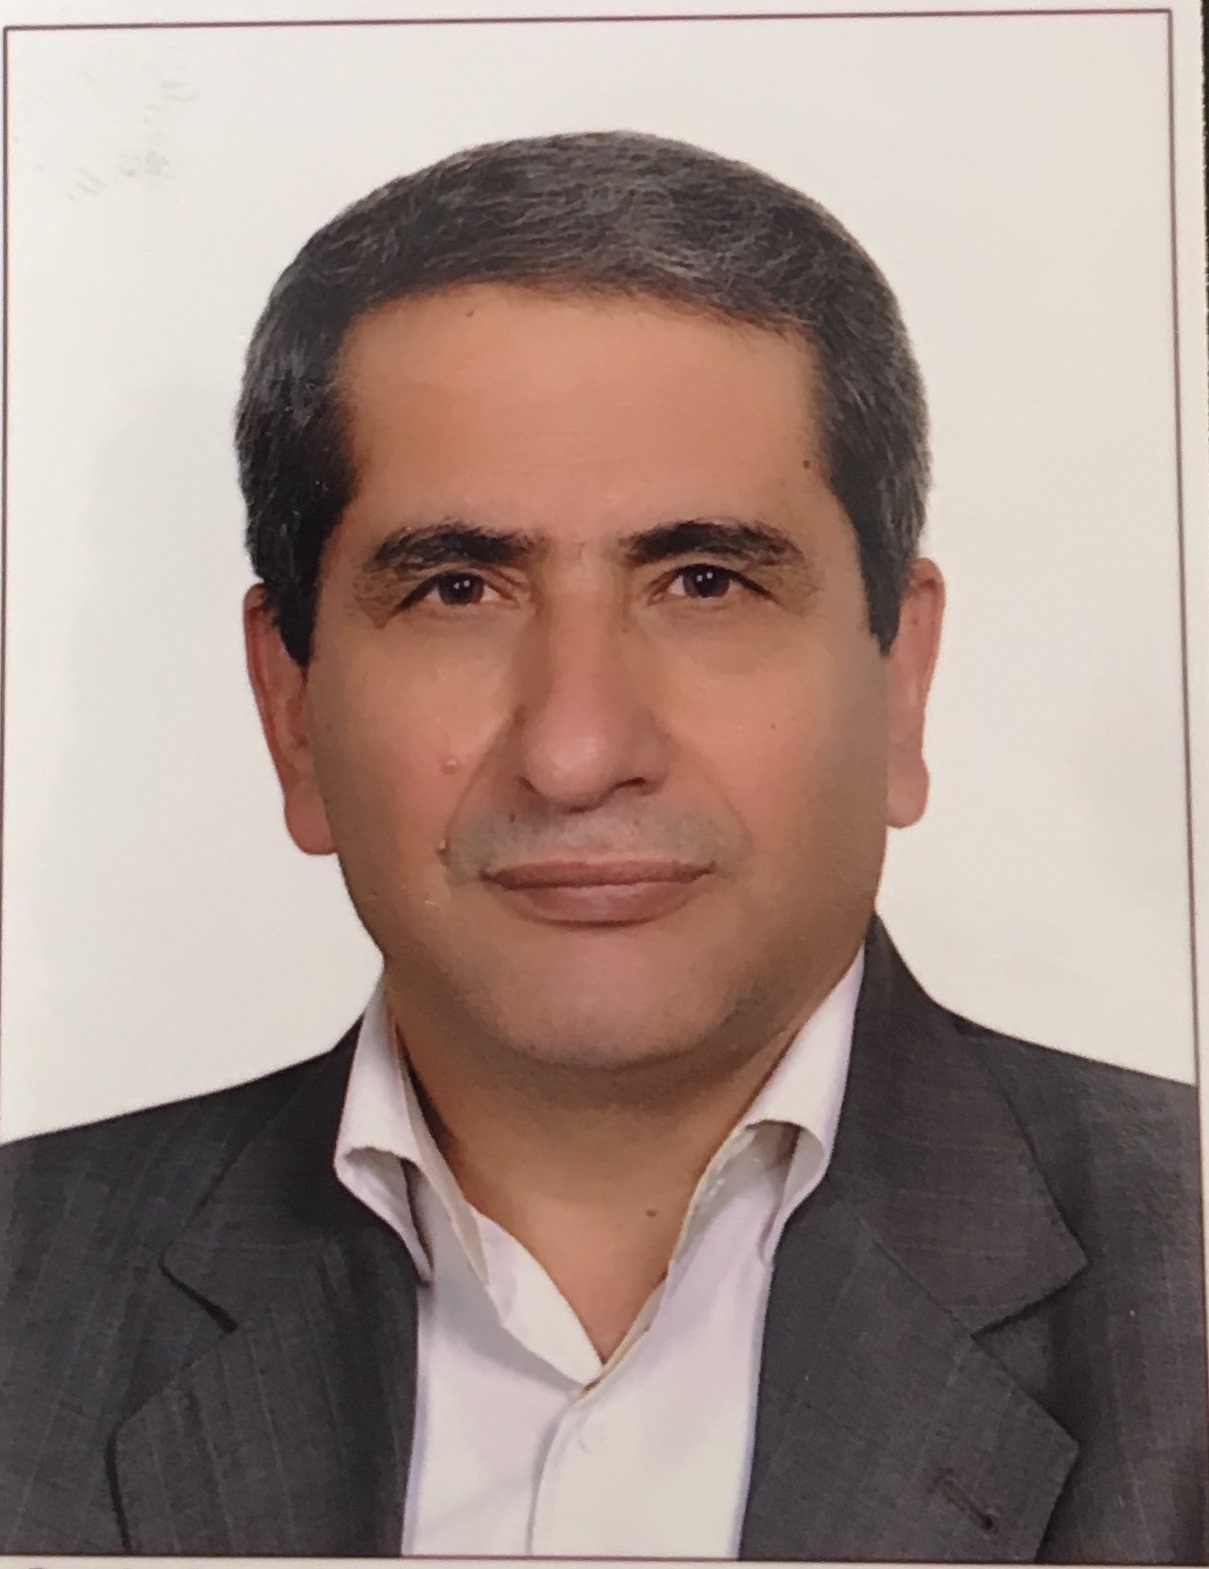 Abbas Afkhami